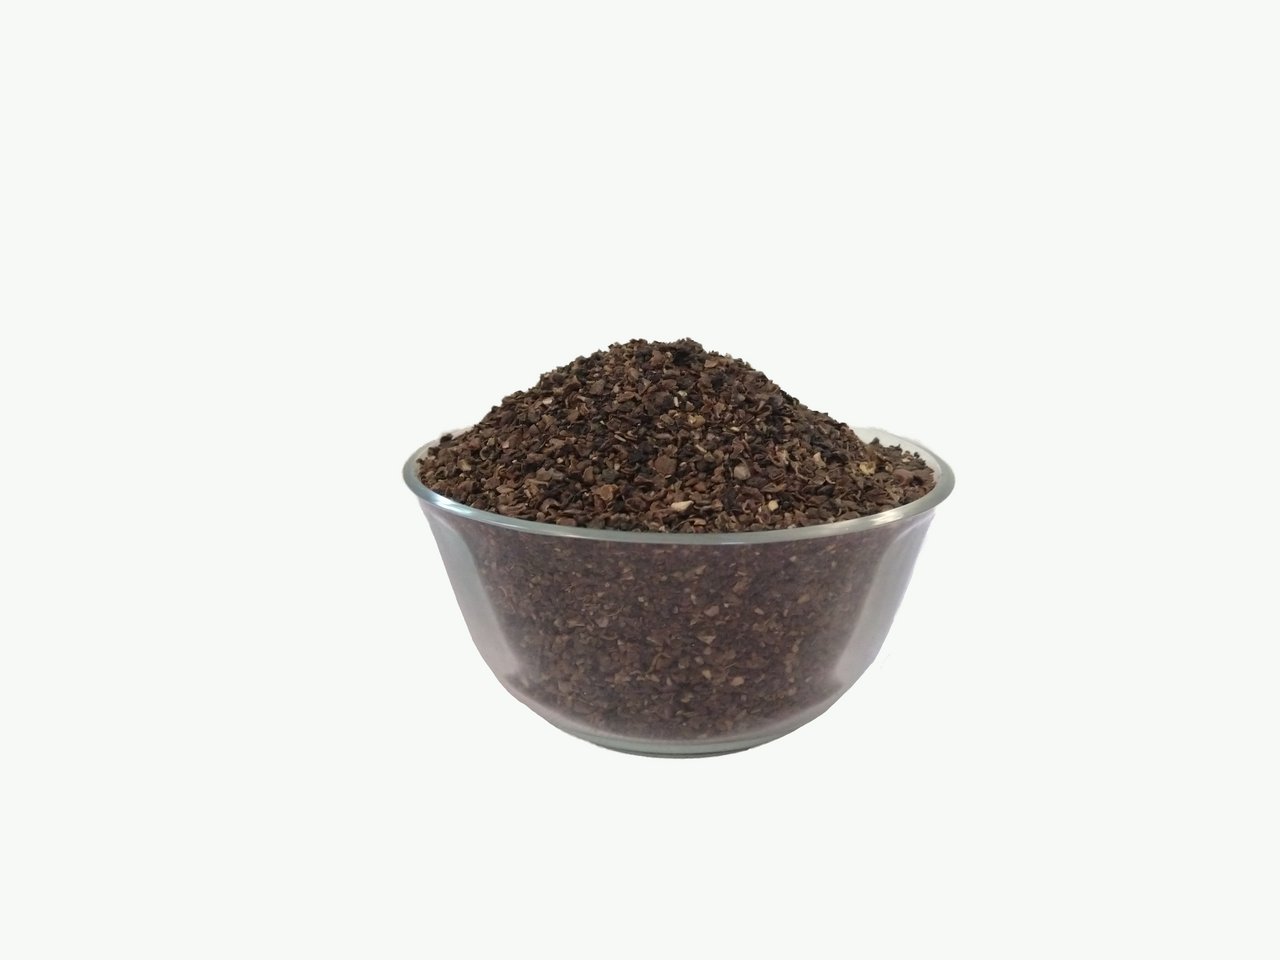 Product: Hillgreen Natural, Noni Tea, 100g